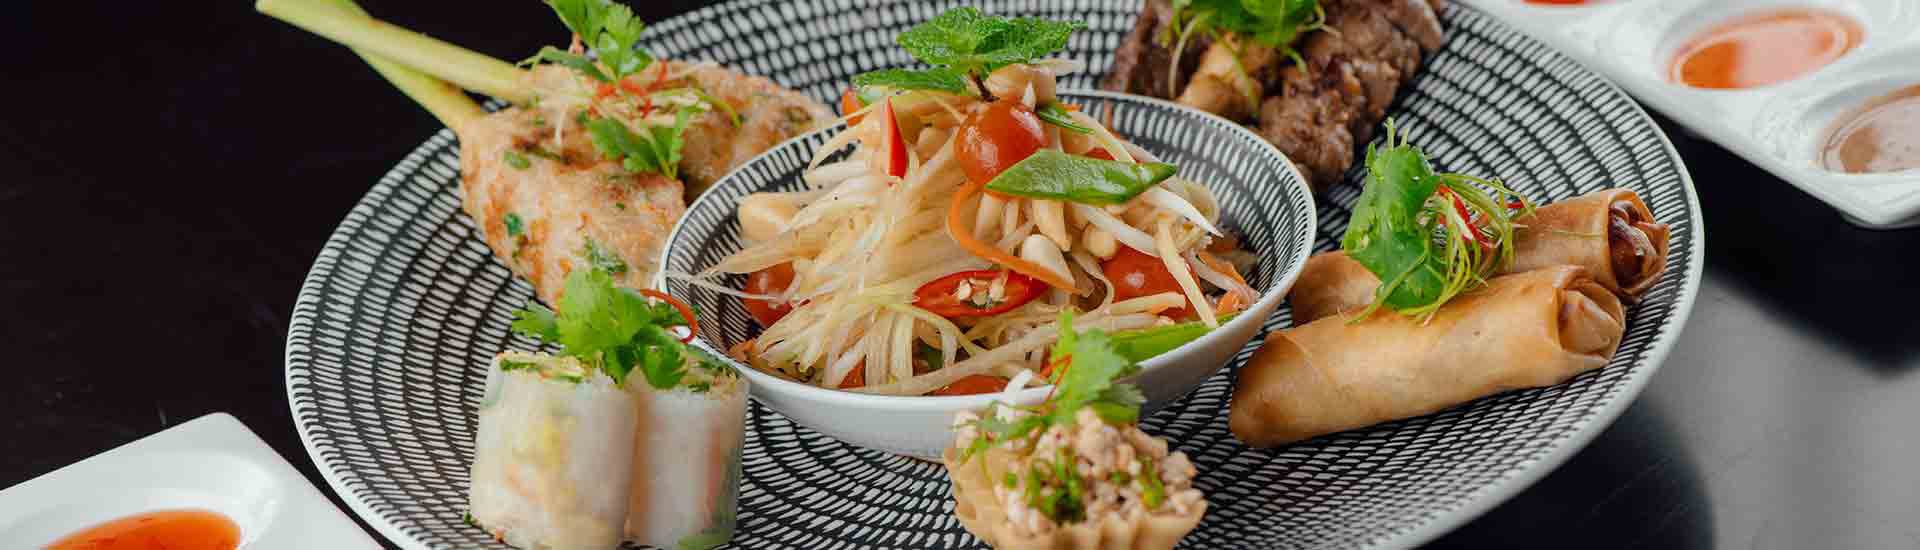 Delicious Mekong Asian Dish at Anantara Salalah